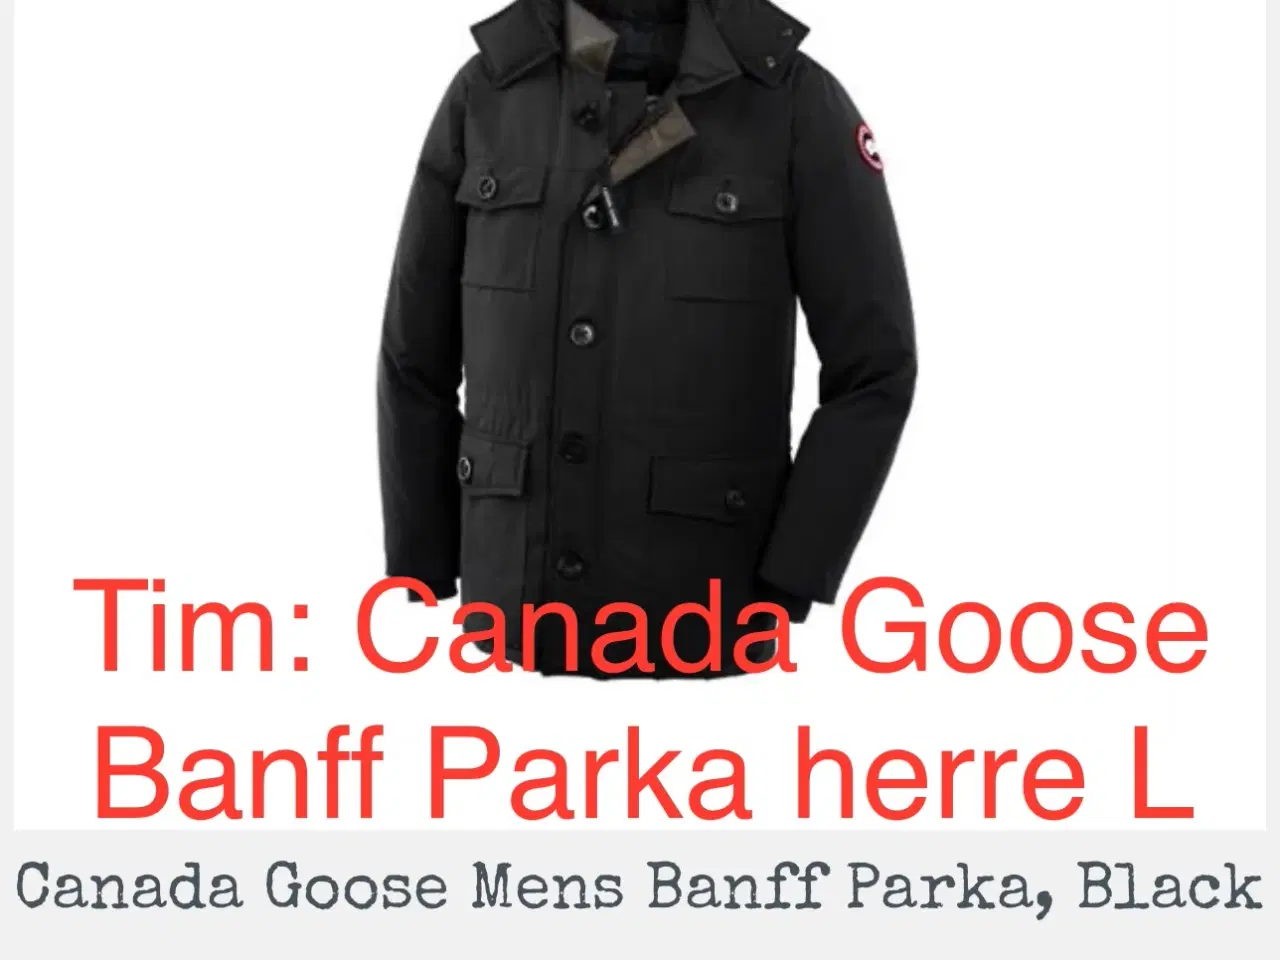 Billede 1 - Canada Goose Banff Parka herre L 